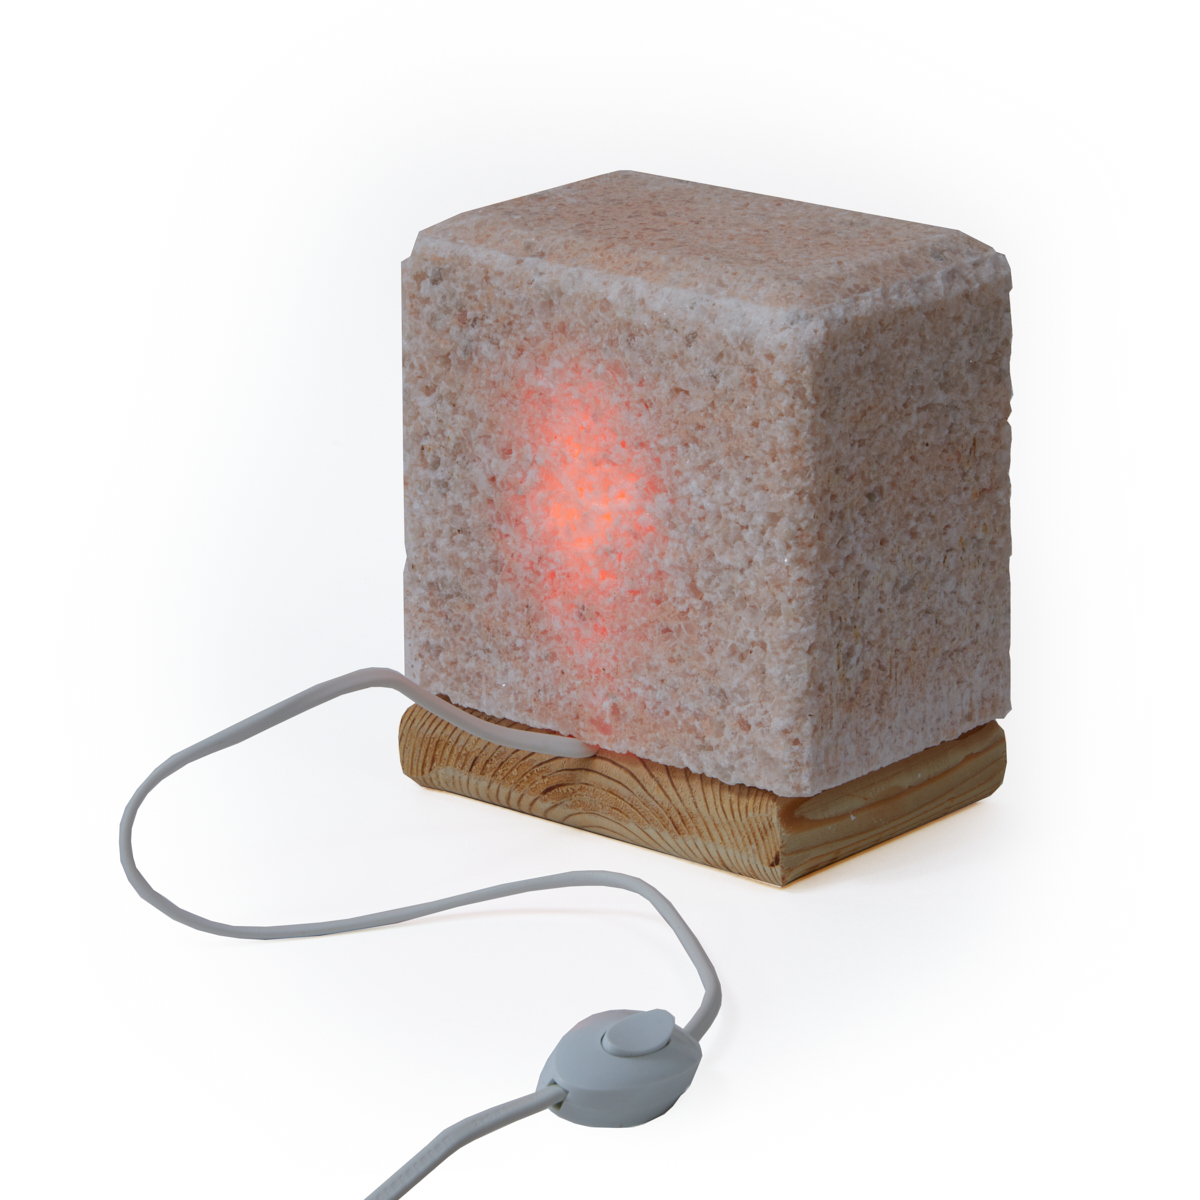  лампа из Крымской розовой соли 4 кг на деревянной подставке .